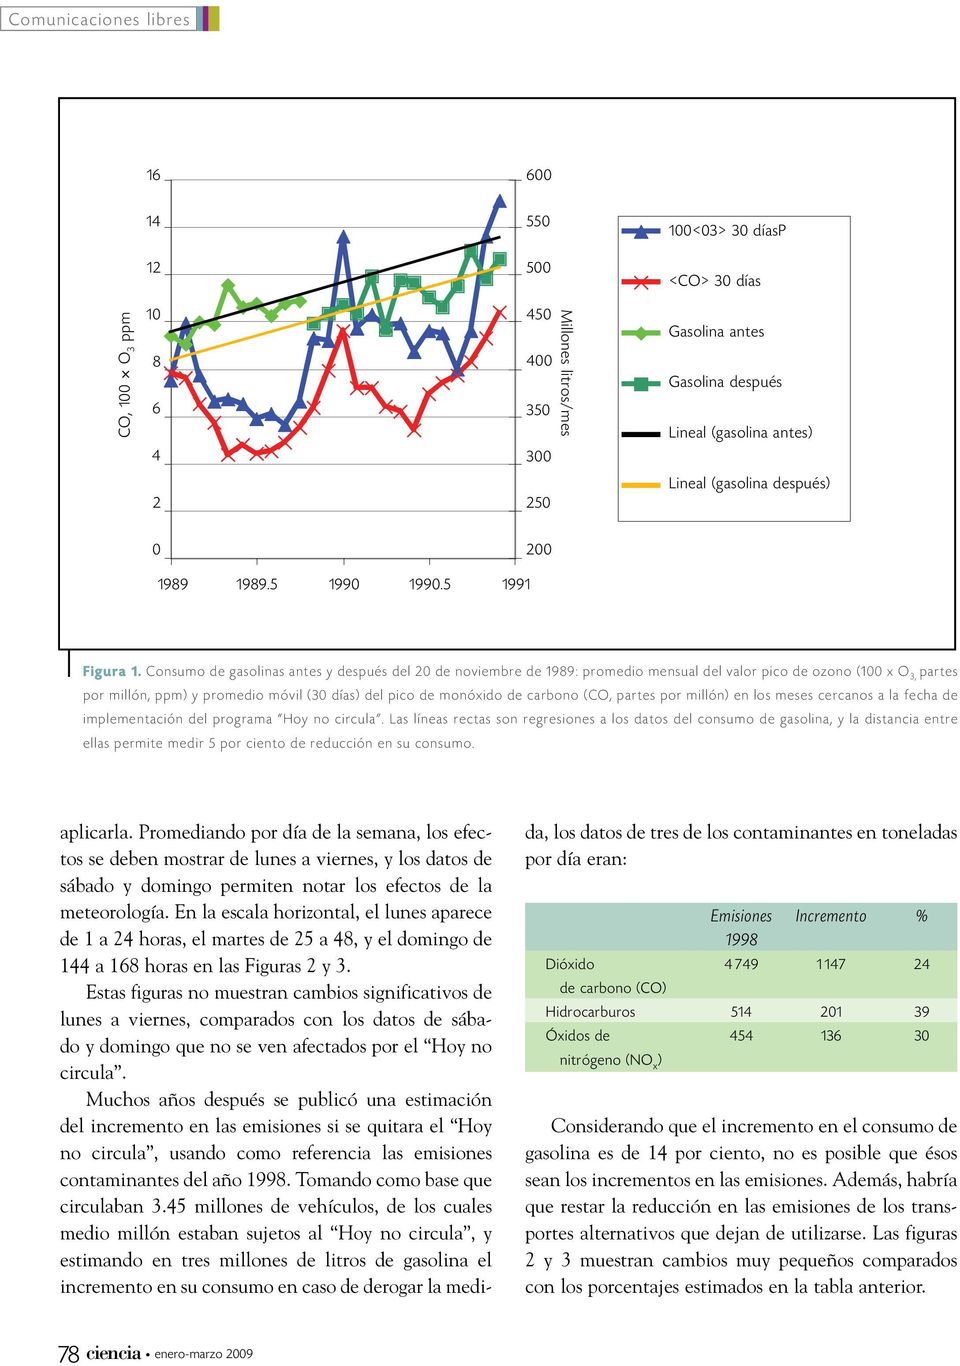 Consumo de gasolinas antes y después del 2 de noviembre de 1989: promedio mensual del valor pico de ozono (1 x O 3, partes por millón, ppm) y promedio móvil (3 días) del pico de monóxido de carbono